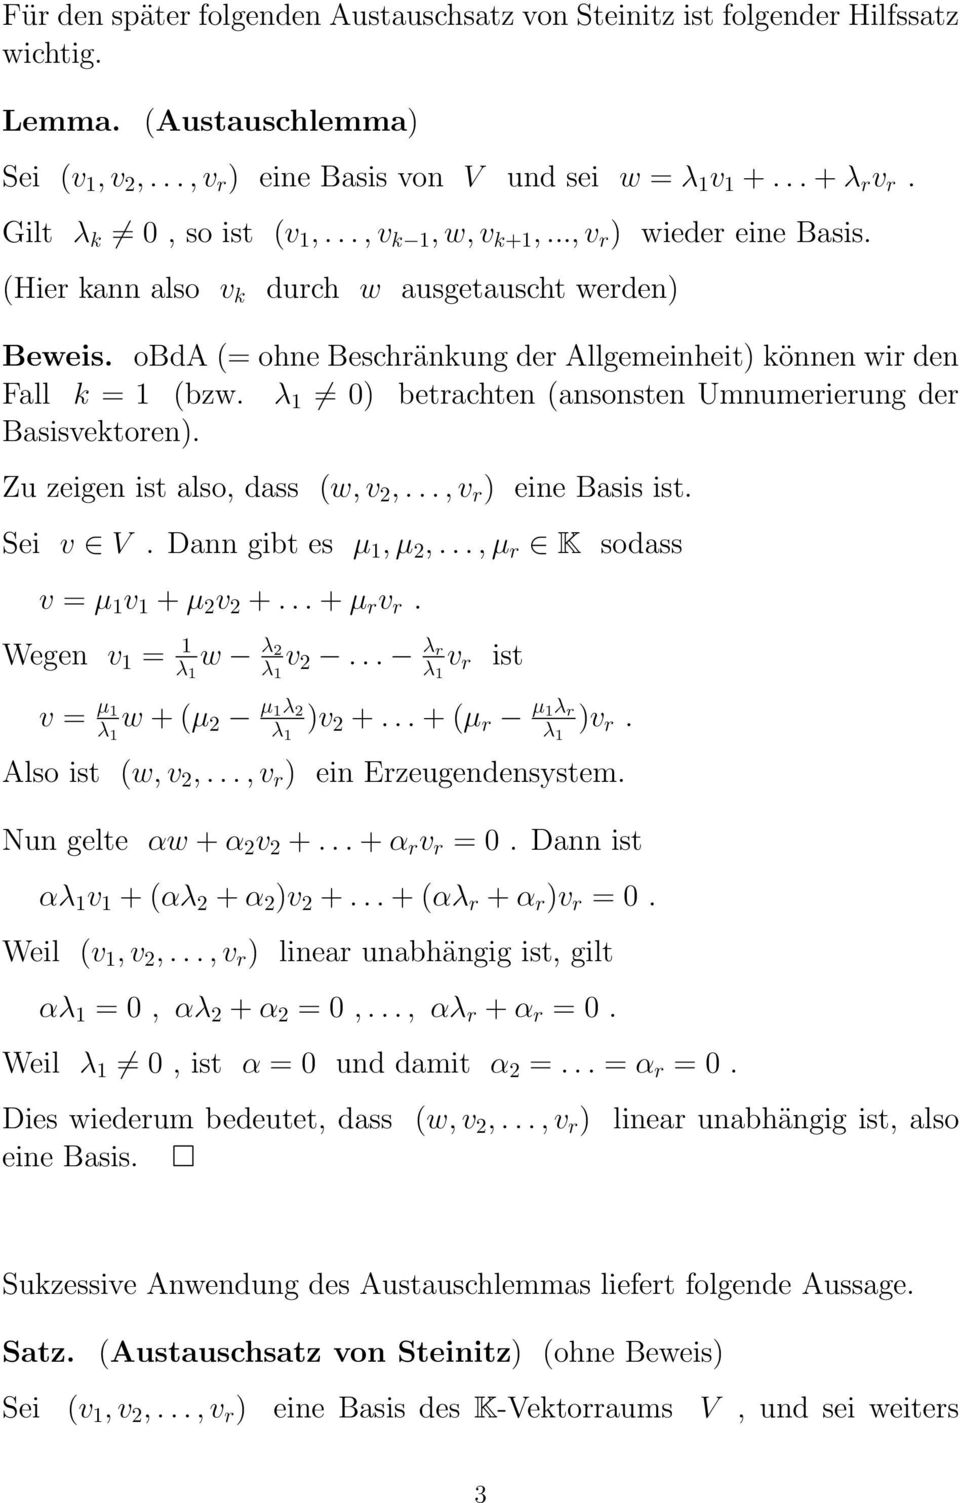 obda (= ohne Beschränkung der Allgemeinheit) können wir den Fall k = 1 (bzw. 0) betrachten (ansonsten Umnumerierung der Basisvektoren). Zu zeigen ist also, dass (w, v 2,..., v r ) eine Basis ist.